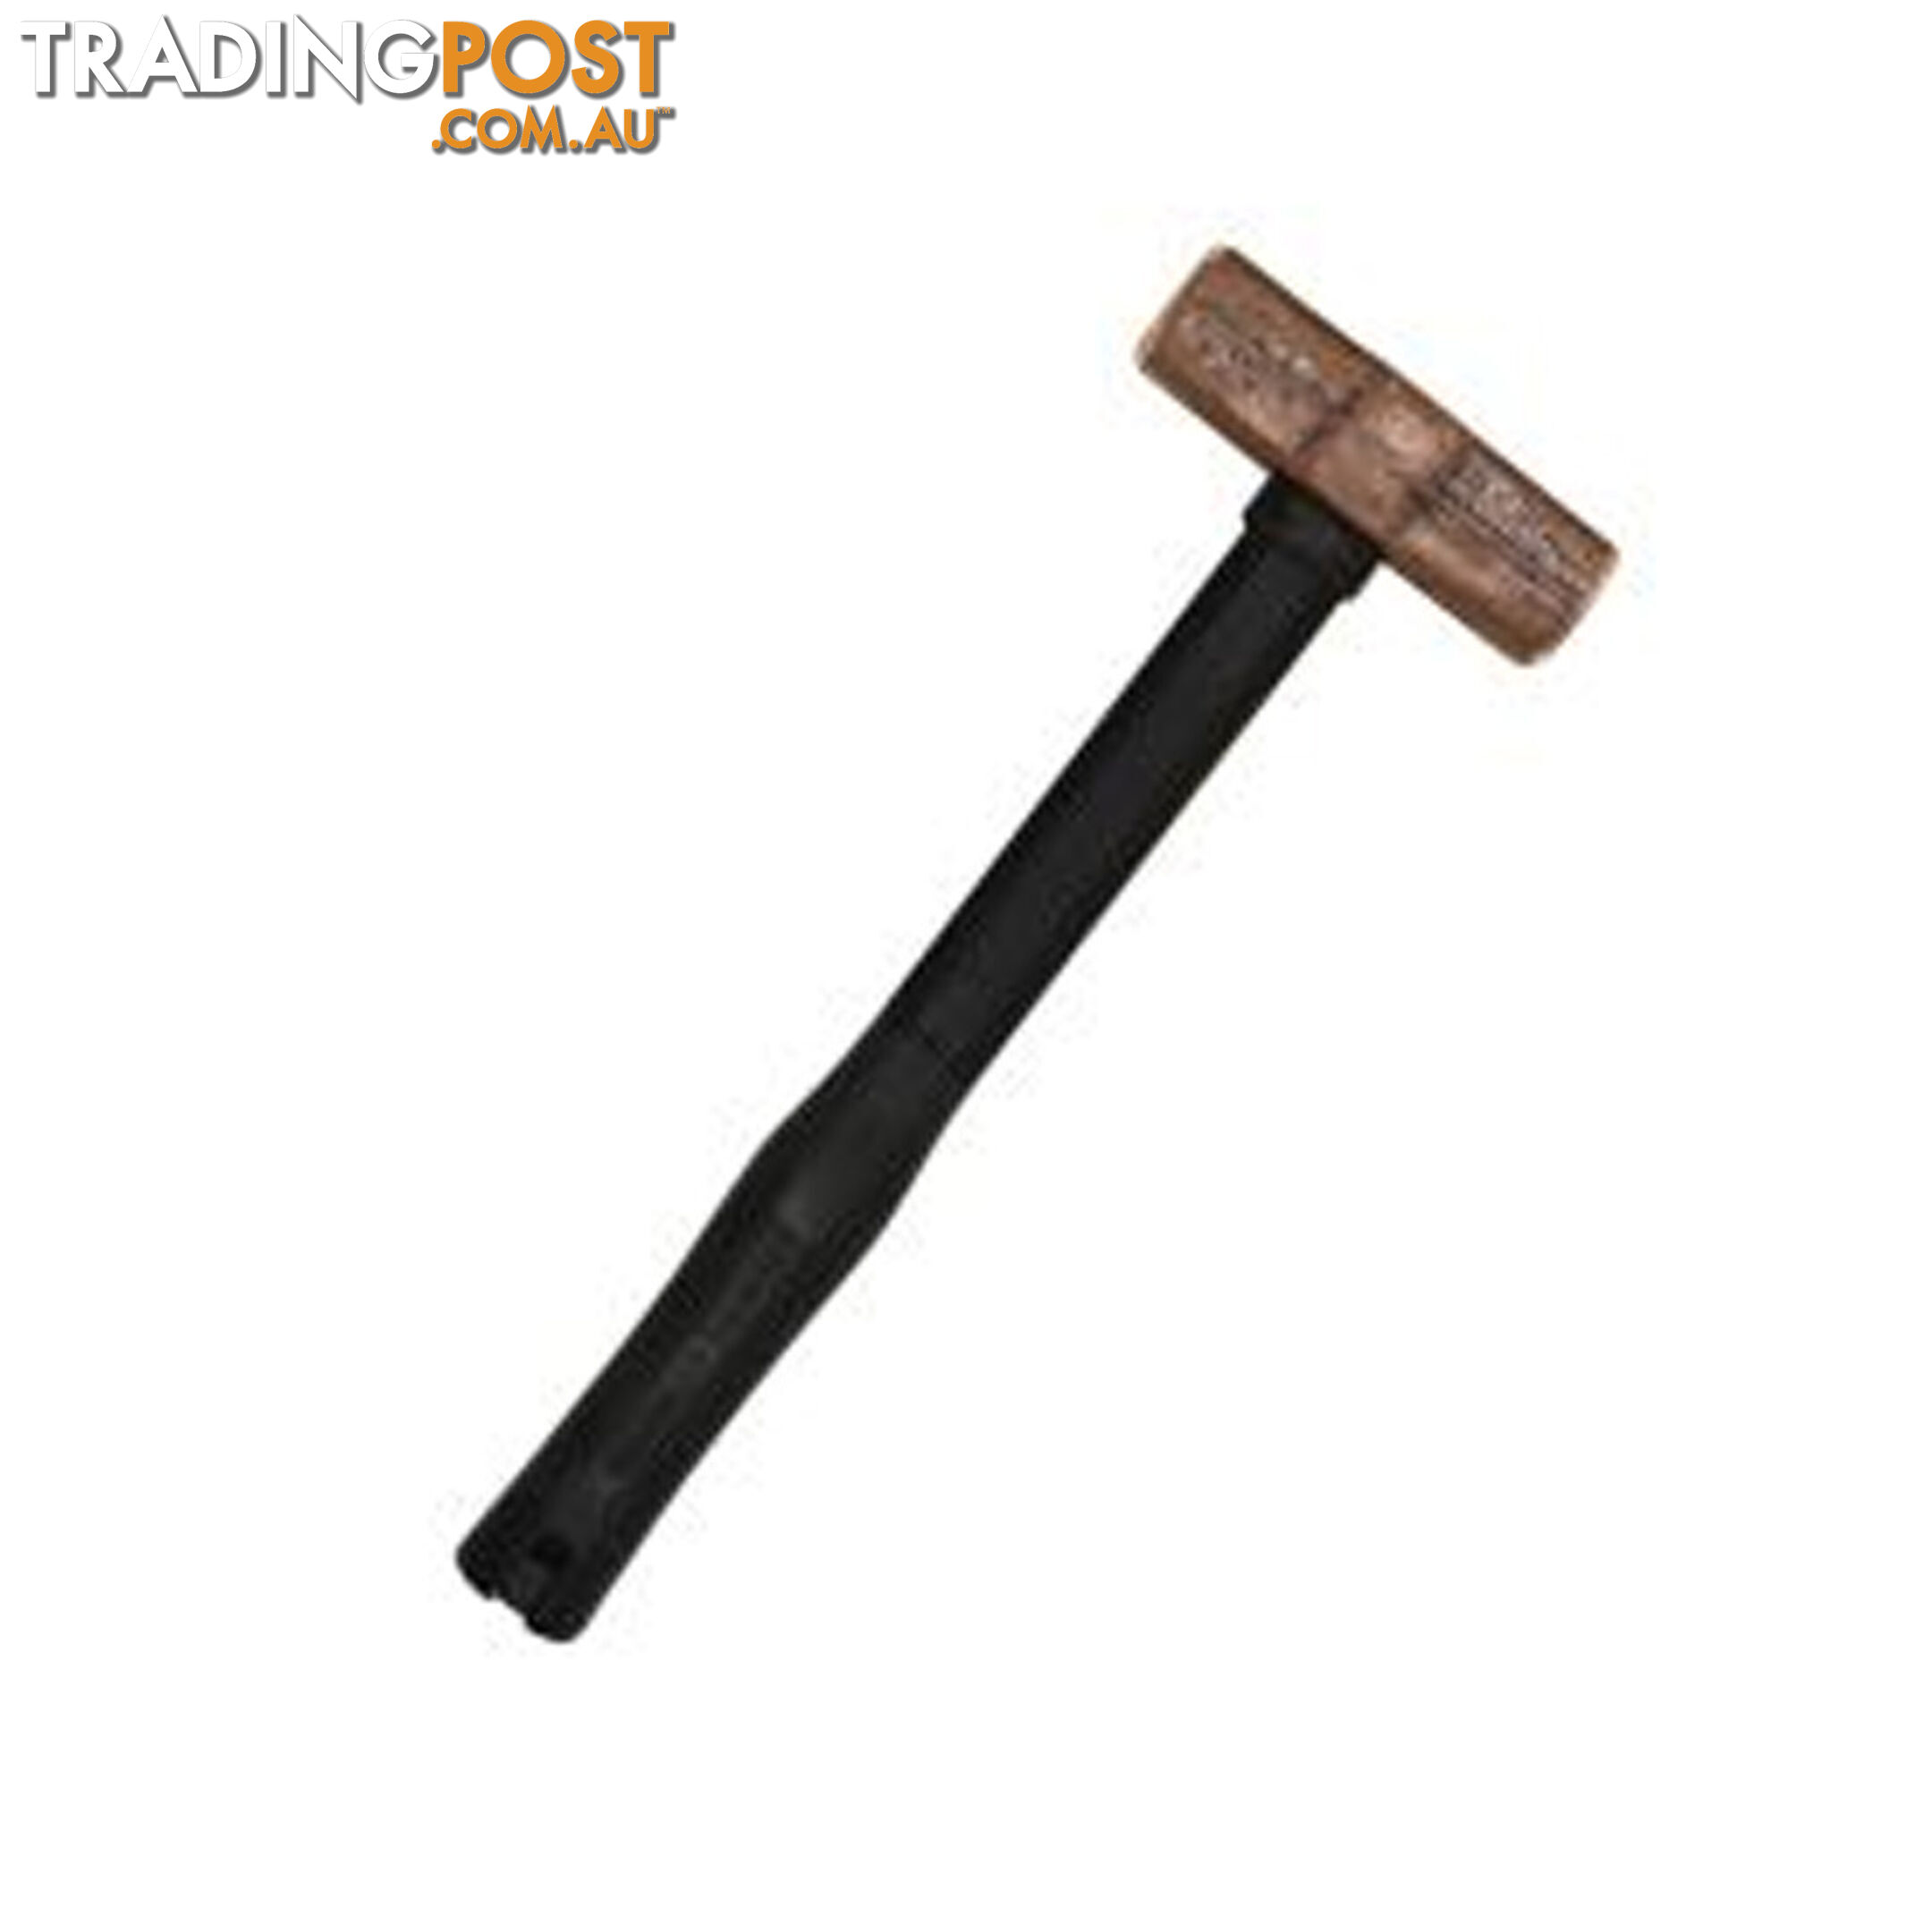 Mumme 10lb (4.53kg) Copper Hammer 900mm  Fibreglass Handle SKU - 5HCFRH10